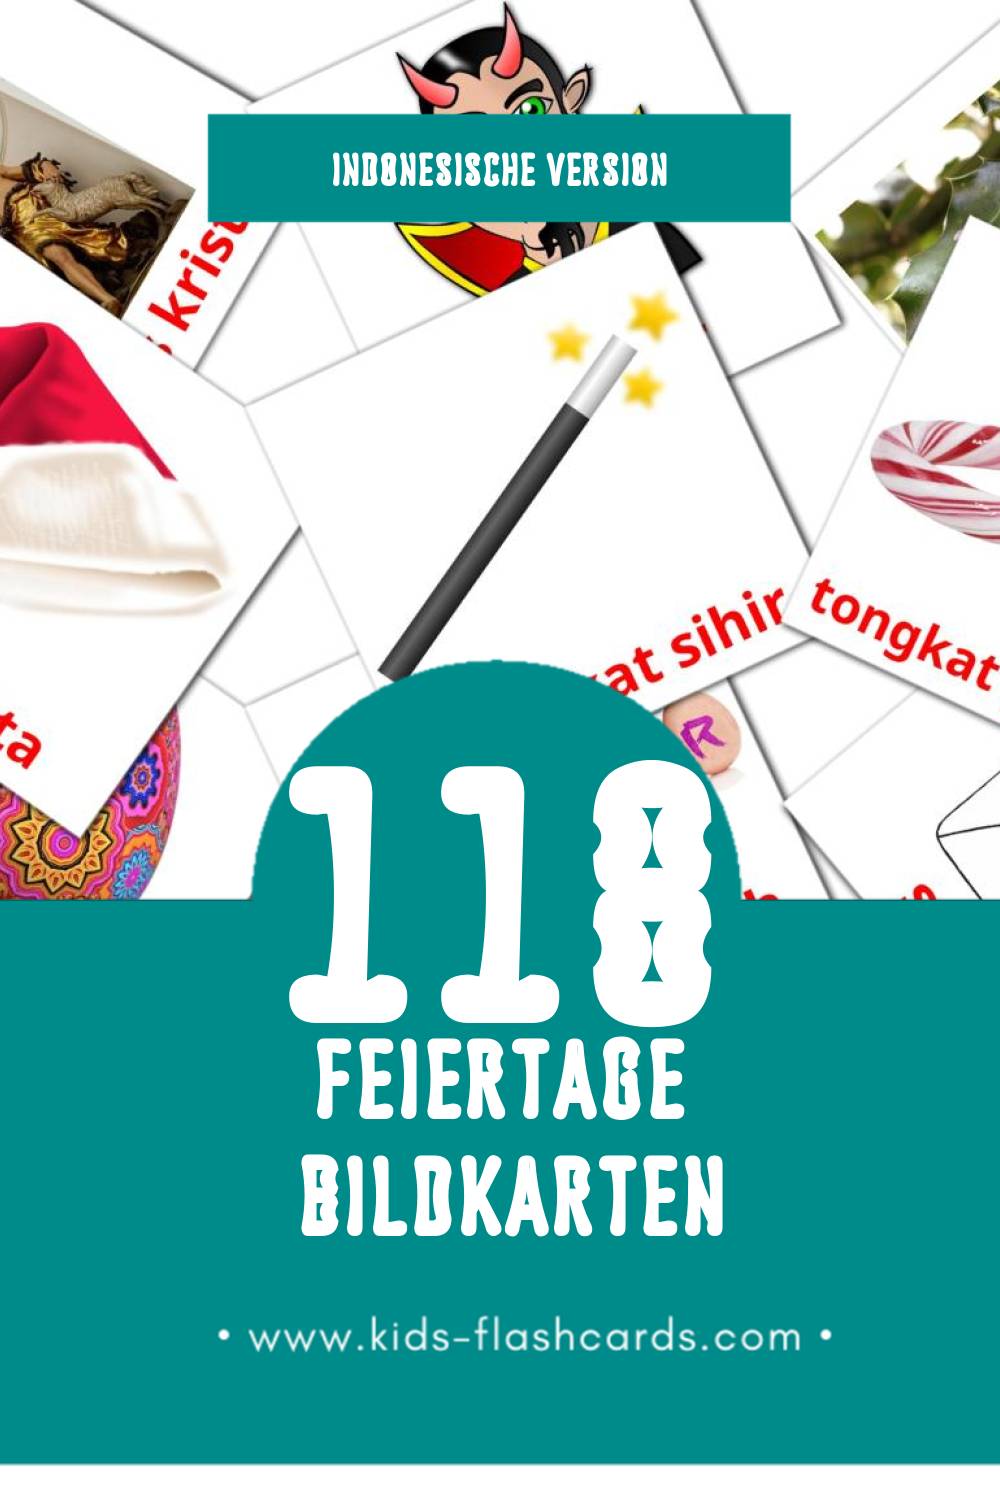 Visual Liburan Flashcards für Kleinkinder (118 Karten in Indonesisch)